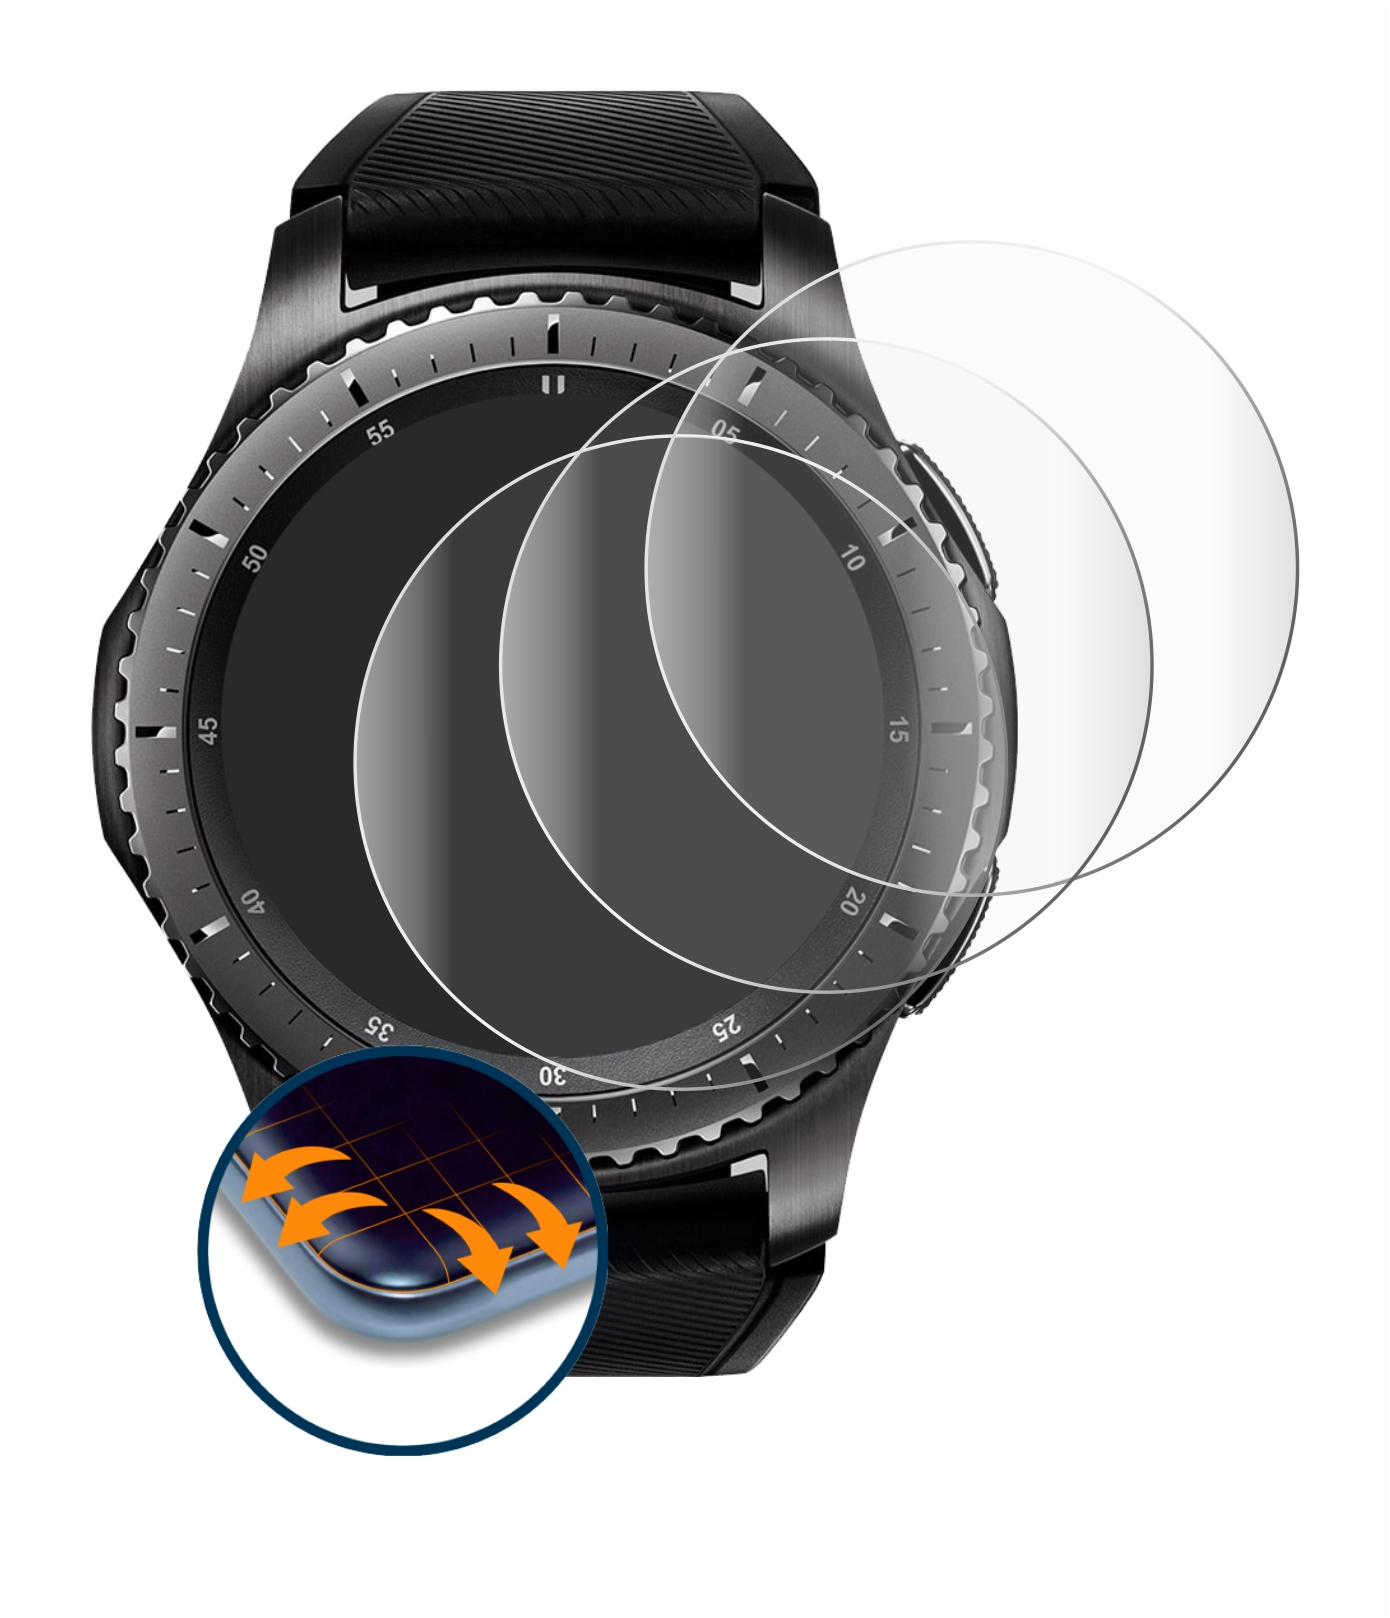 SAVVIES 4x S3 Frontier) Samsung Full-Cover Curved Gear 3D Flex Schutzfolie(für